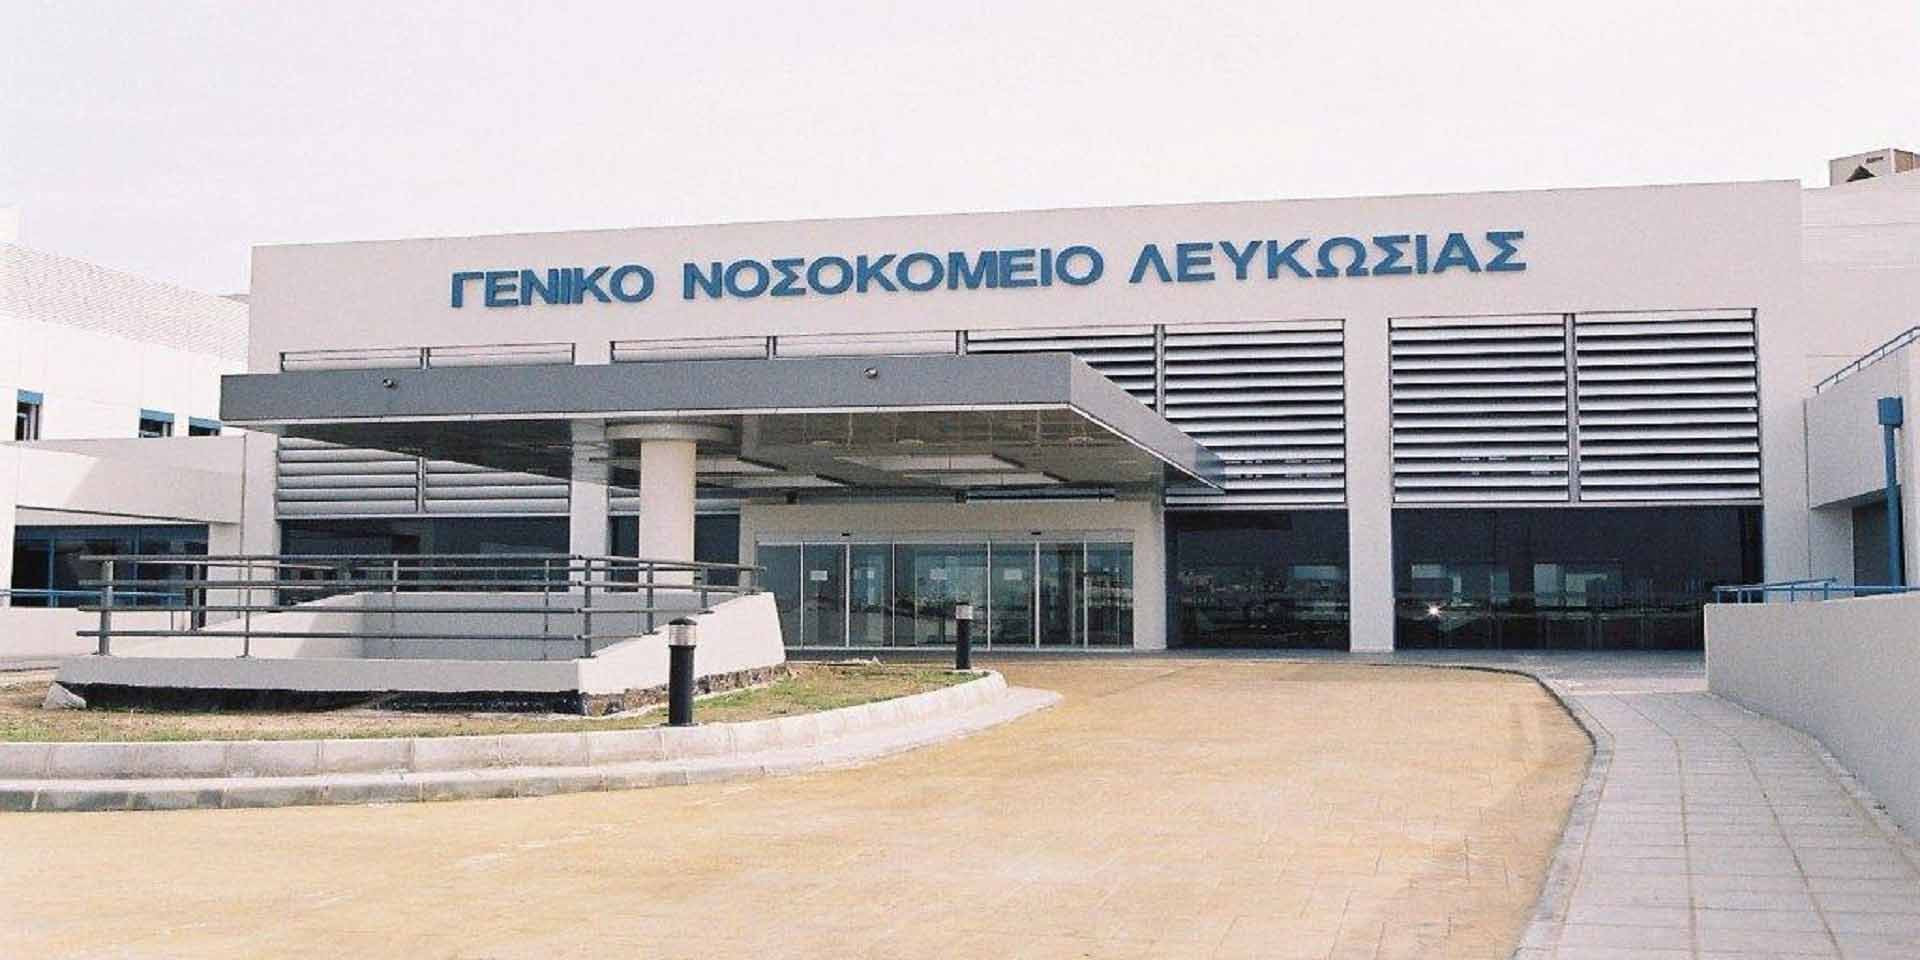 Σε στάση εργασίας οι νοσηλευτές του ΓΝ Λευκωσίας - Διαμαρτύρονται για την «απαράδεκτη συμπεριφορά του ΟΚΥπΥ» 